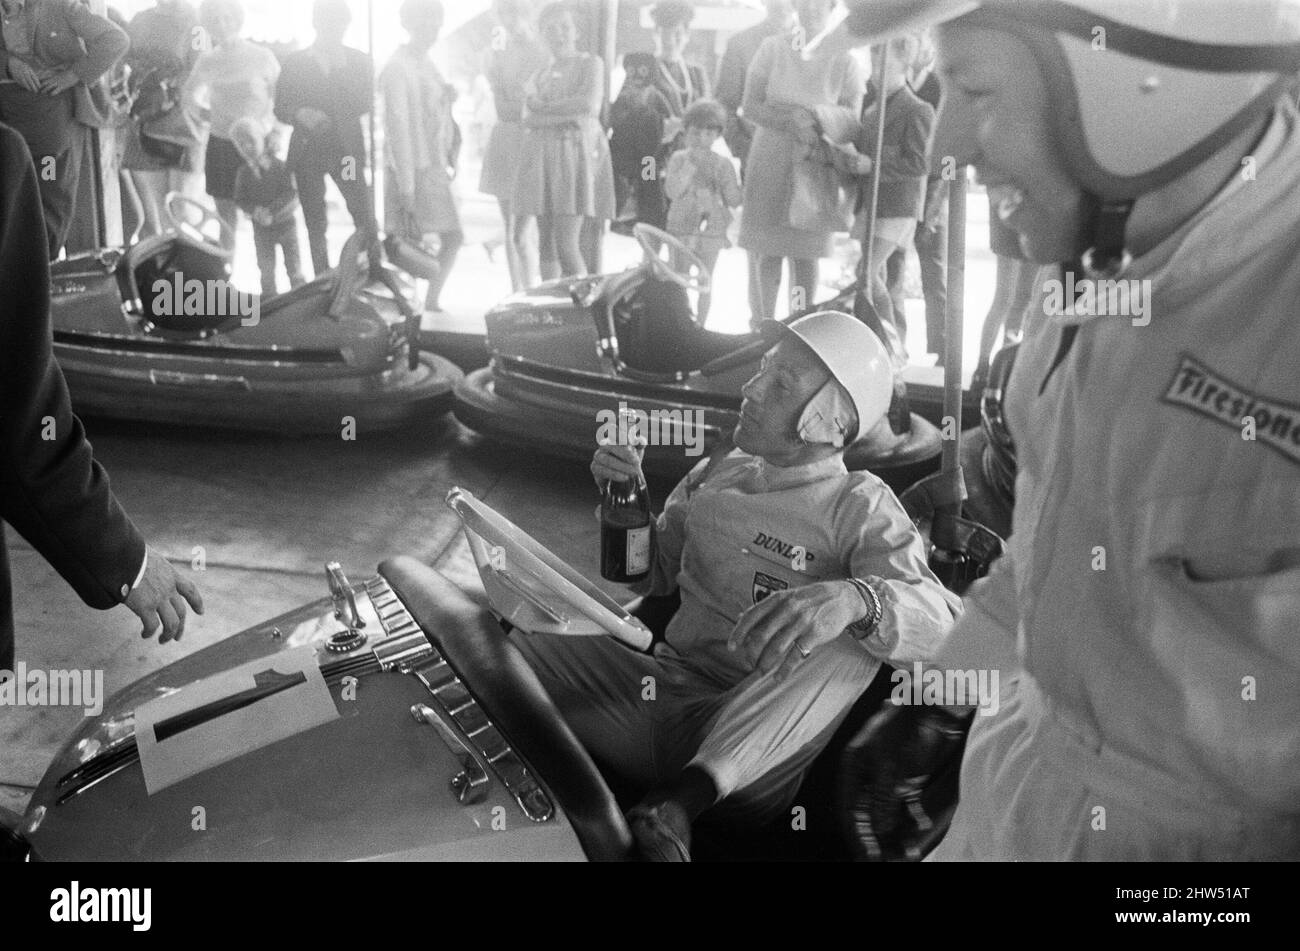 Weltmeister auf den DodGems. In einer neuen Fernsehshow mit dem Titel „Nice Time“ in Granada werden die Grand Prix-Piloten Stirling Moss, John Surtees und Denny Hume auftreten. Diese Ausgabe wurde auf der Battersea Fun Fair auf den Dodgem Cars gedreht, wo ein Mini-Grand-Prix stattfand. 30.. Juli 1968. Stockfoto